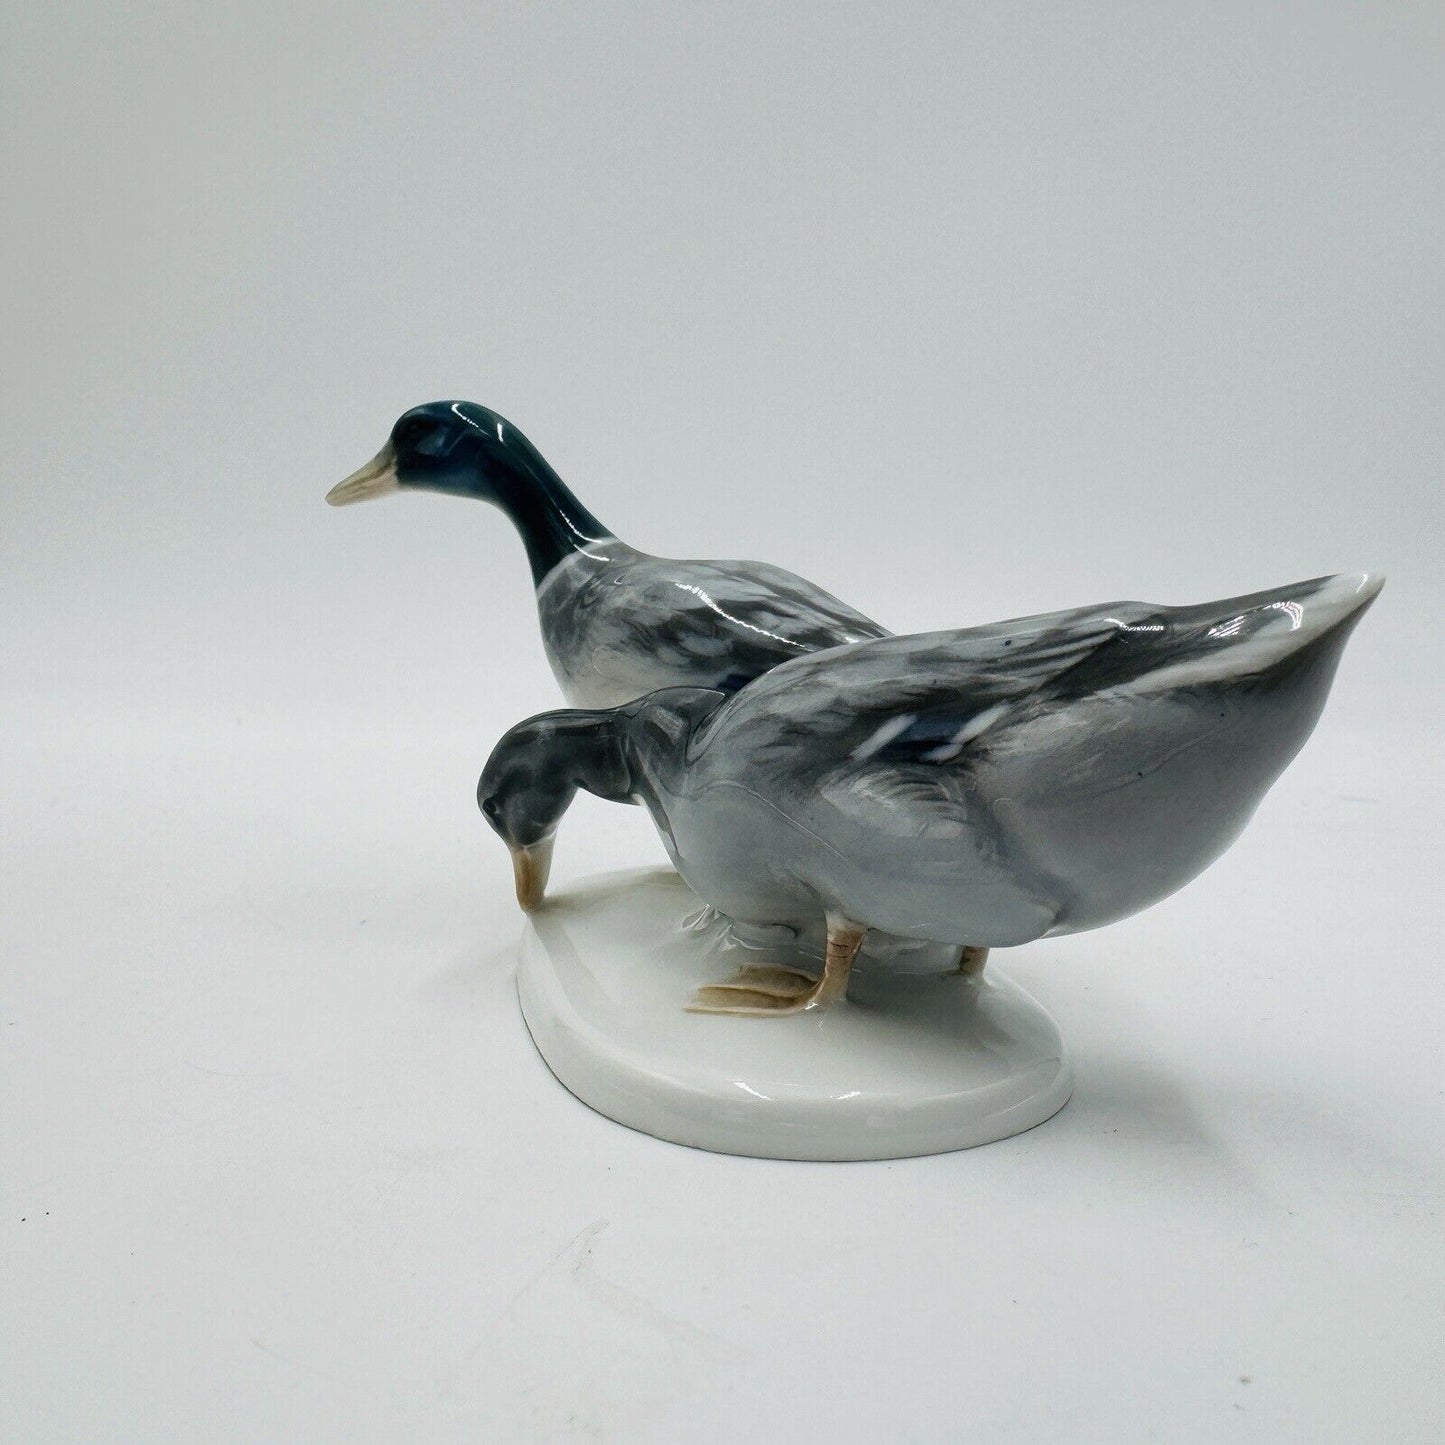 Vintage Rosenthal Porcelain Germany Himmelstoss ducks figurine 3” x 6”